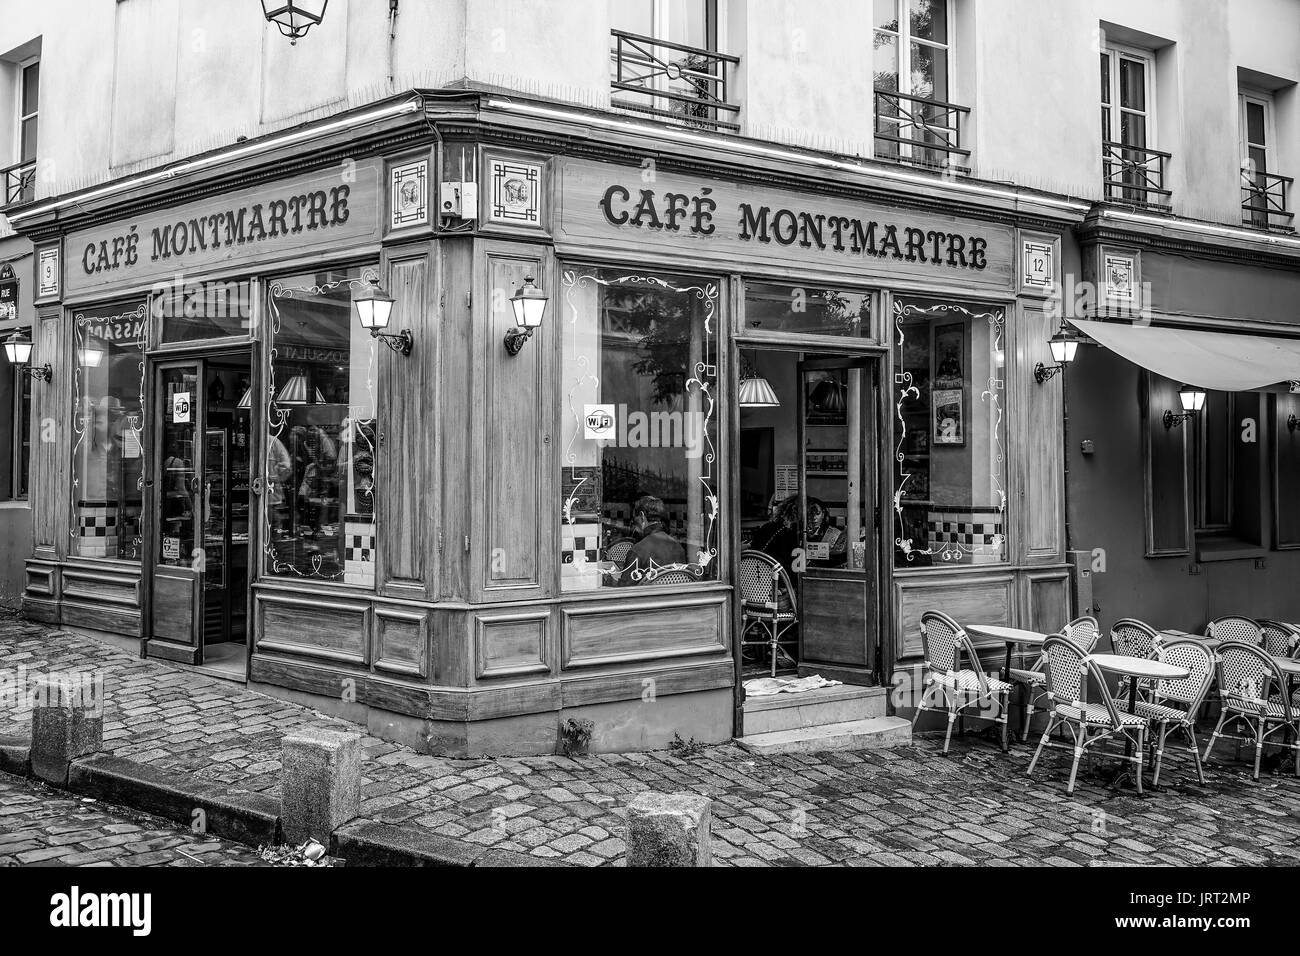 Typische Pariser Stil Street Cafe - Cafe Montmartre - Paris/Frankreich - 24. SEPTEMBER 2017 Stockfoto